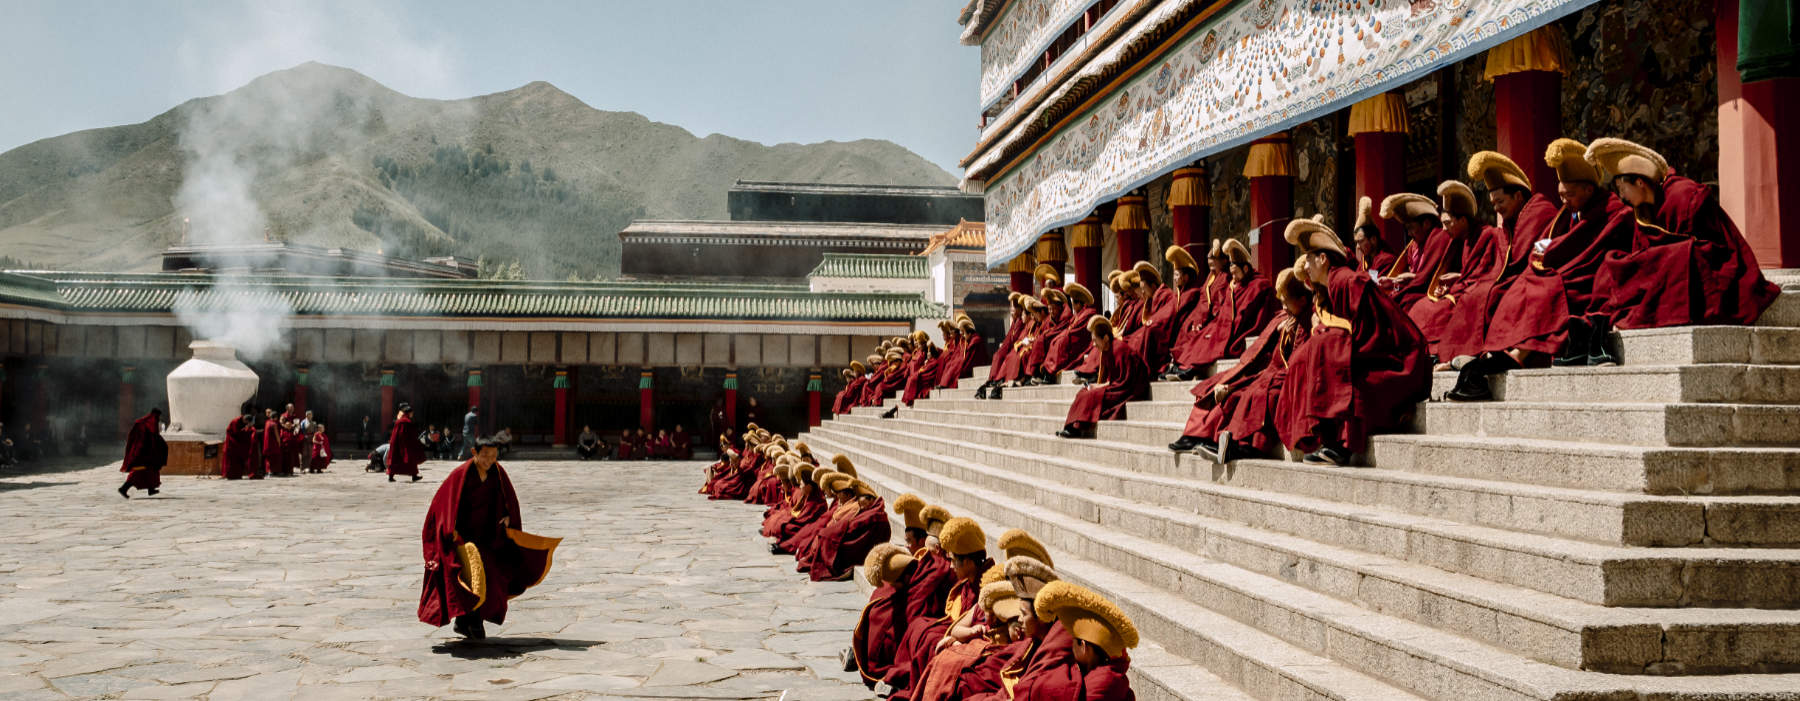 All our Tibet<br class="hidden-md hidden-lg" /> Travel Bucket List